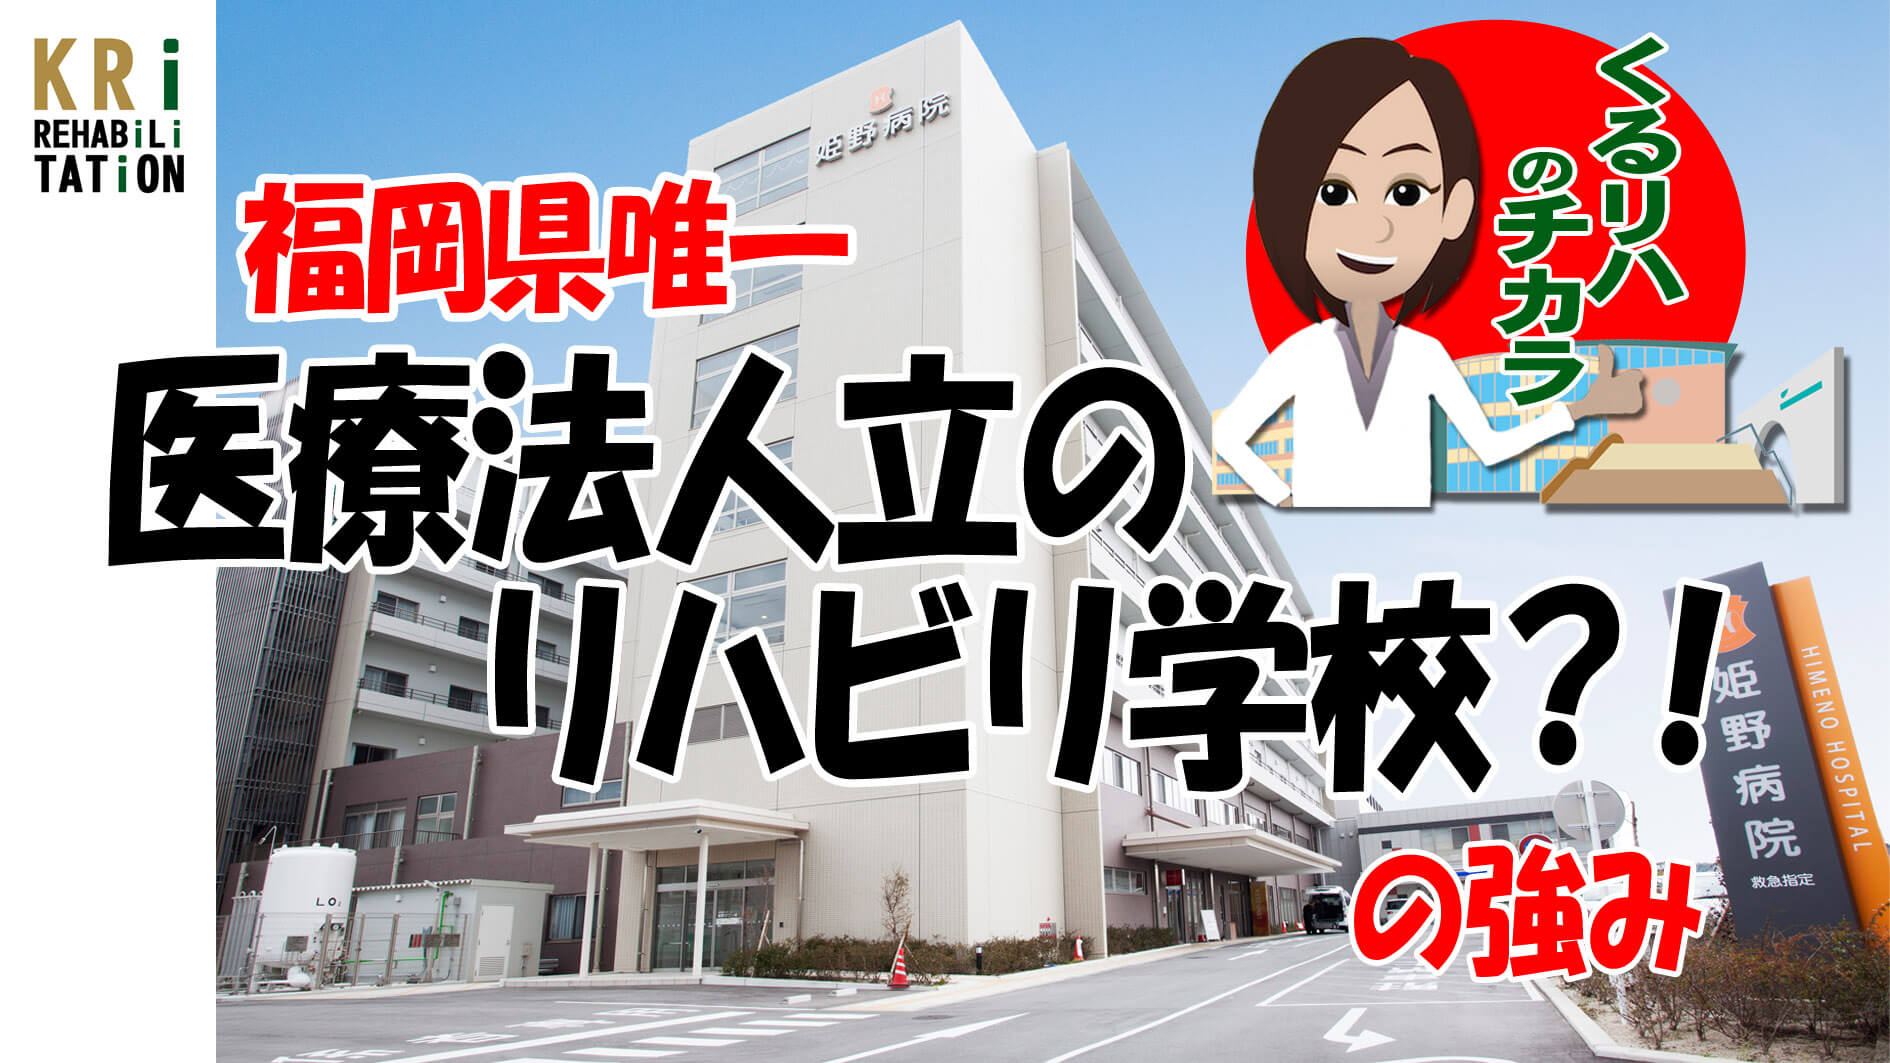 福岡県唯一 医療法人立のリハビリ学校?!の強み